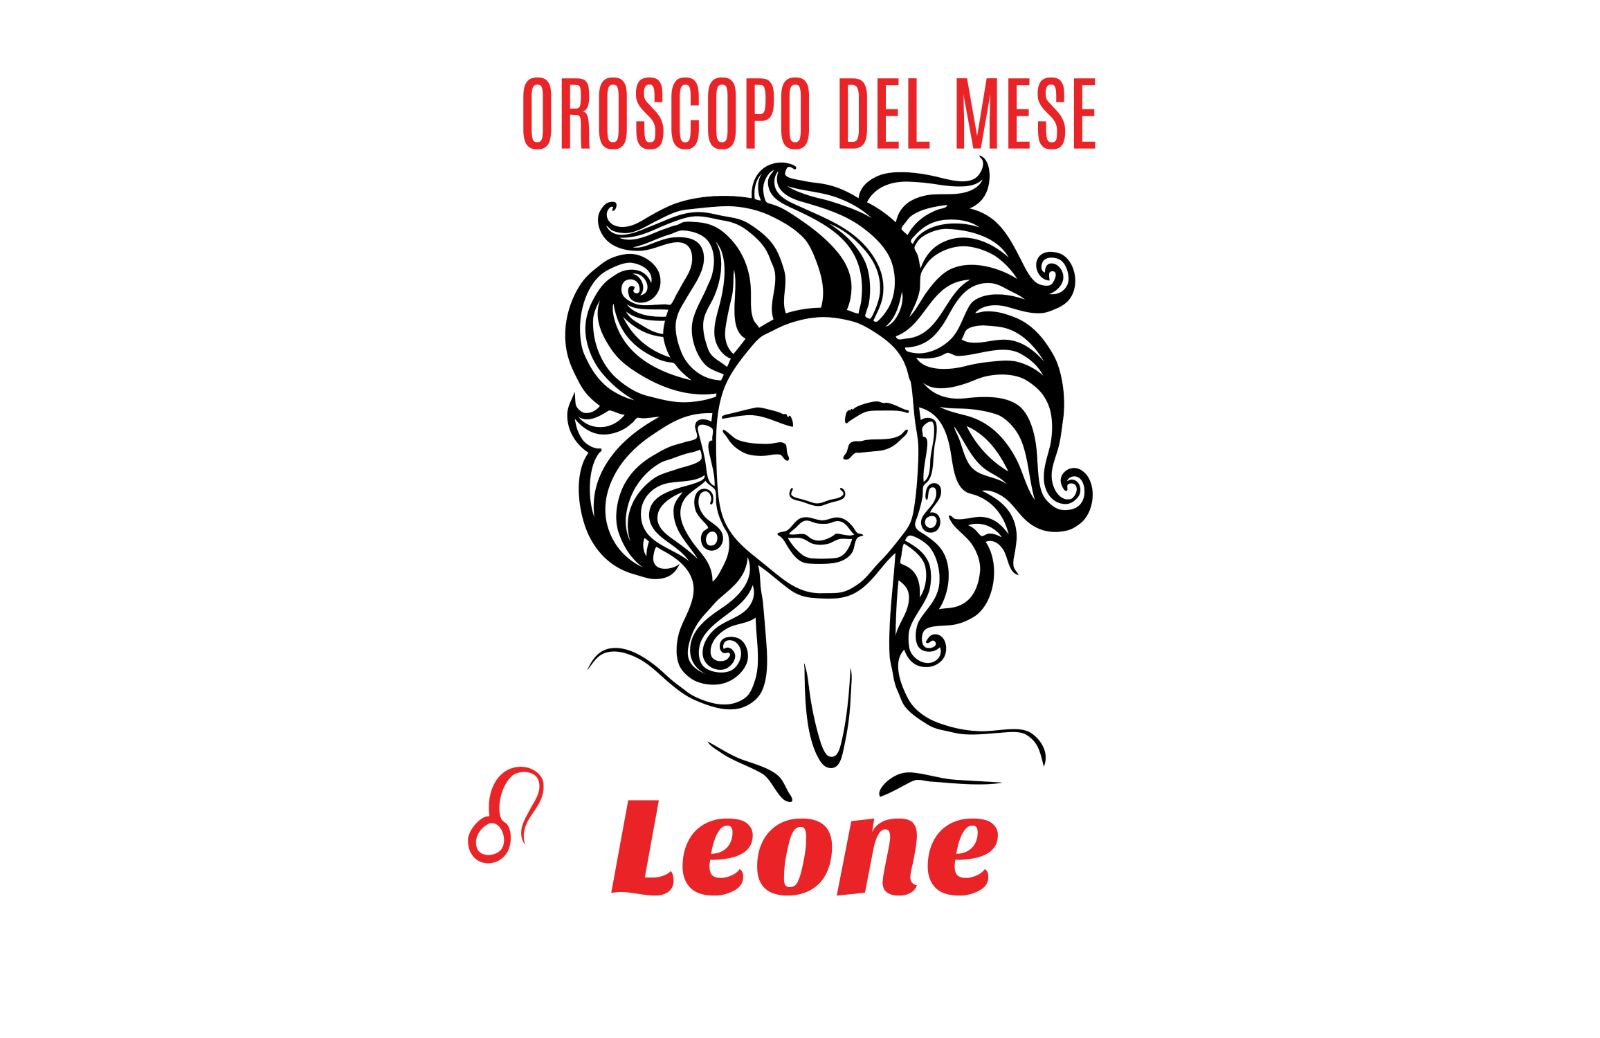 Oroscopo del mese: Leone - settembre 2019